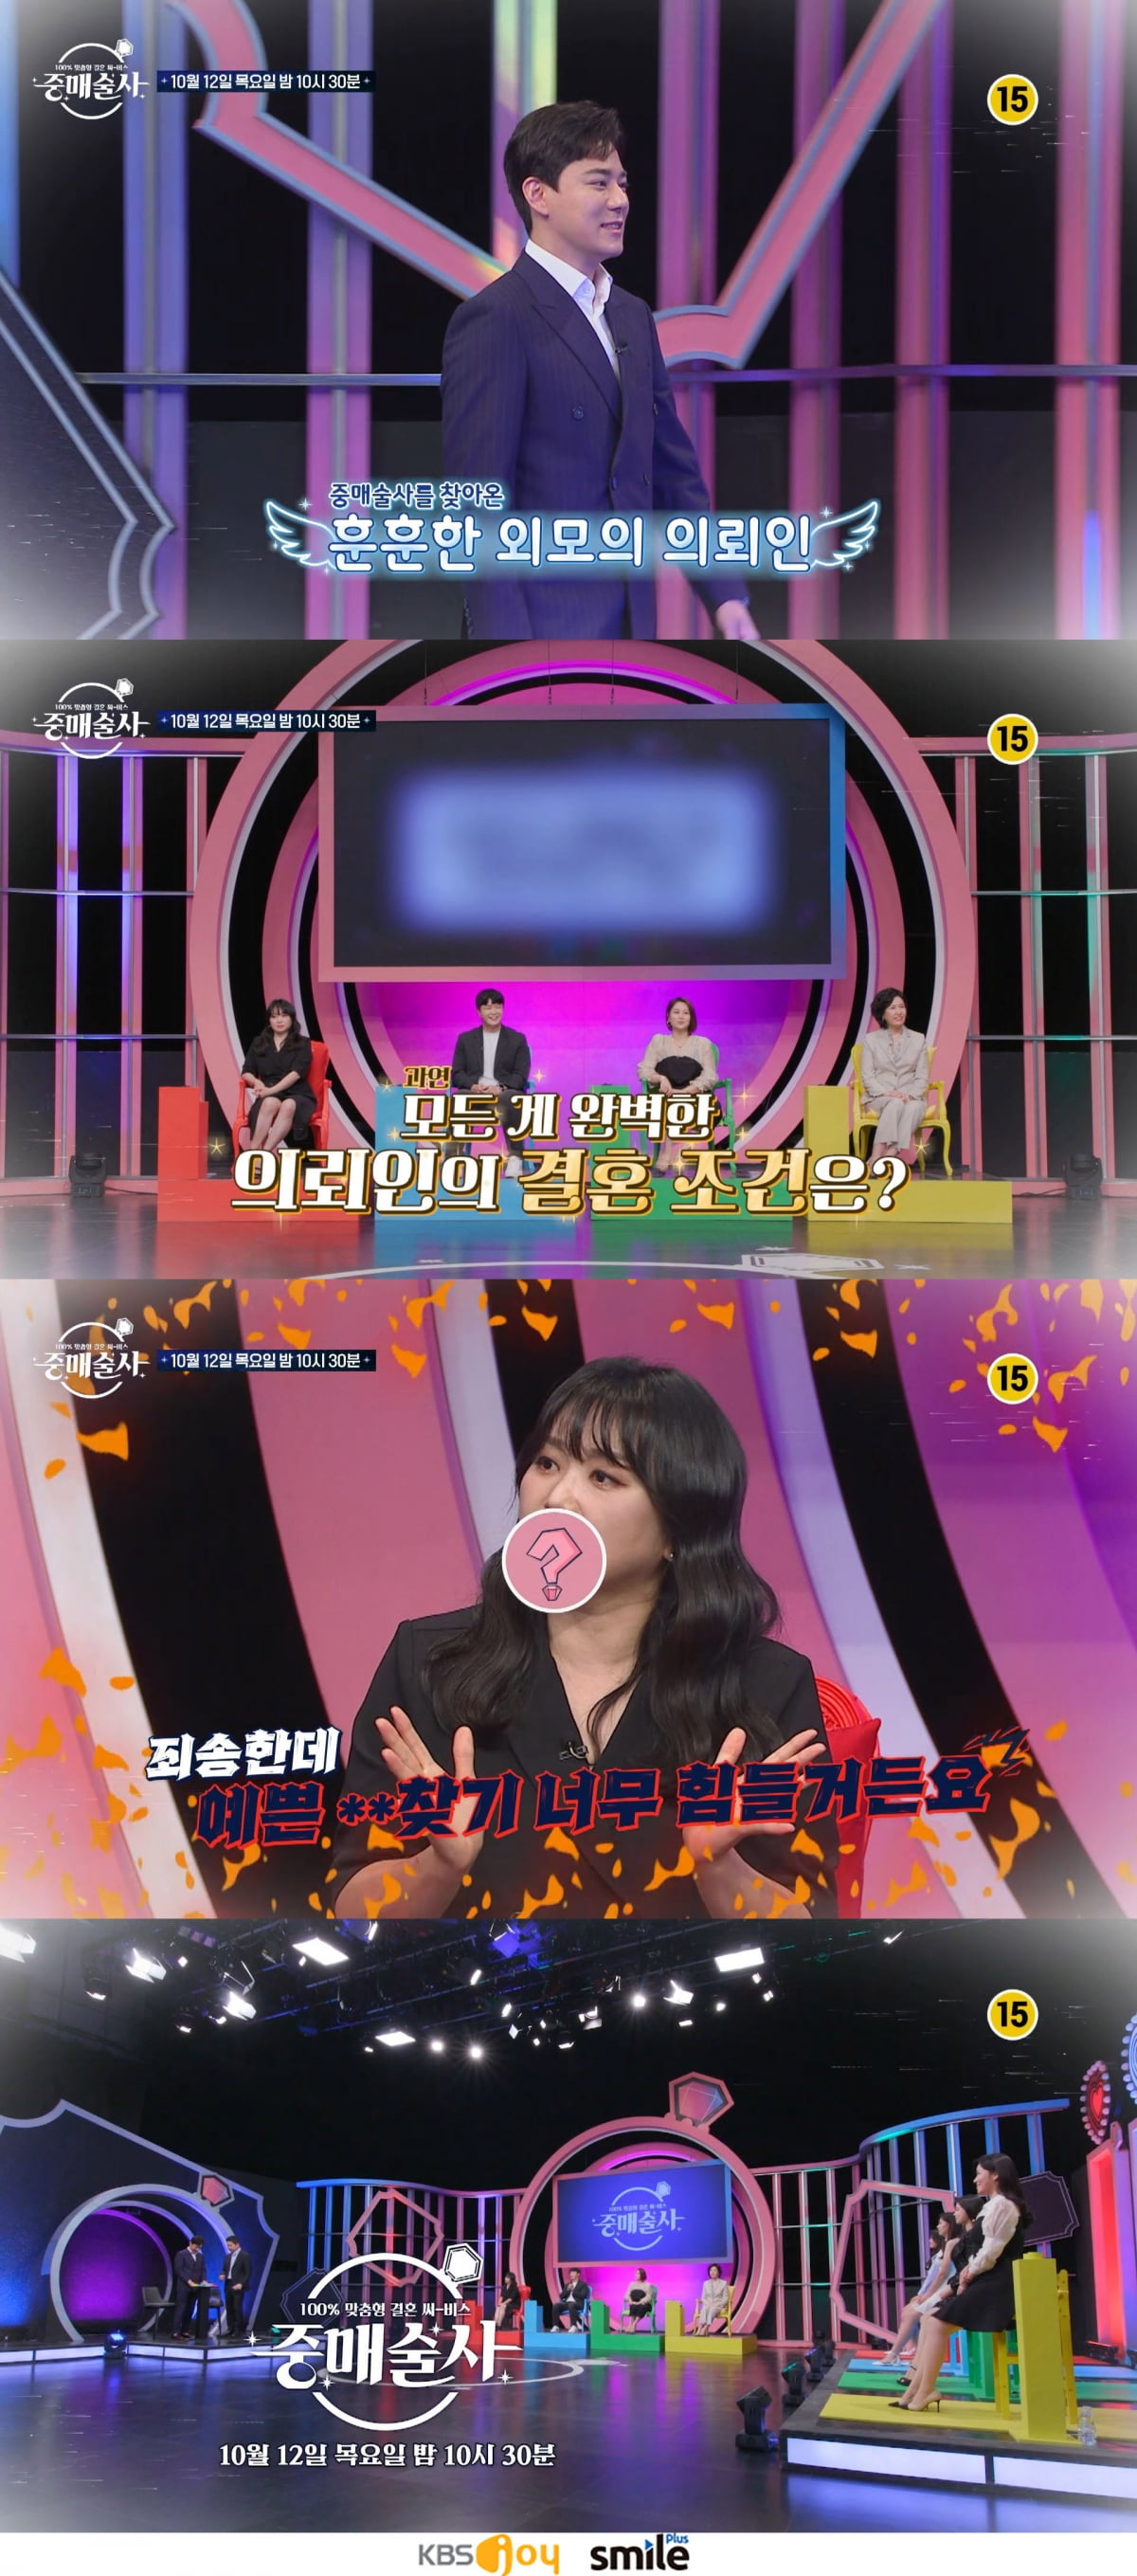 /사진제공=KBS Joy & Smile TV Plus